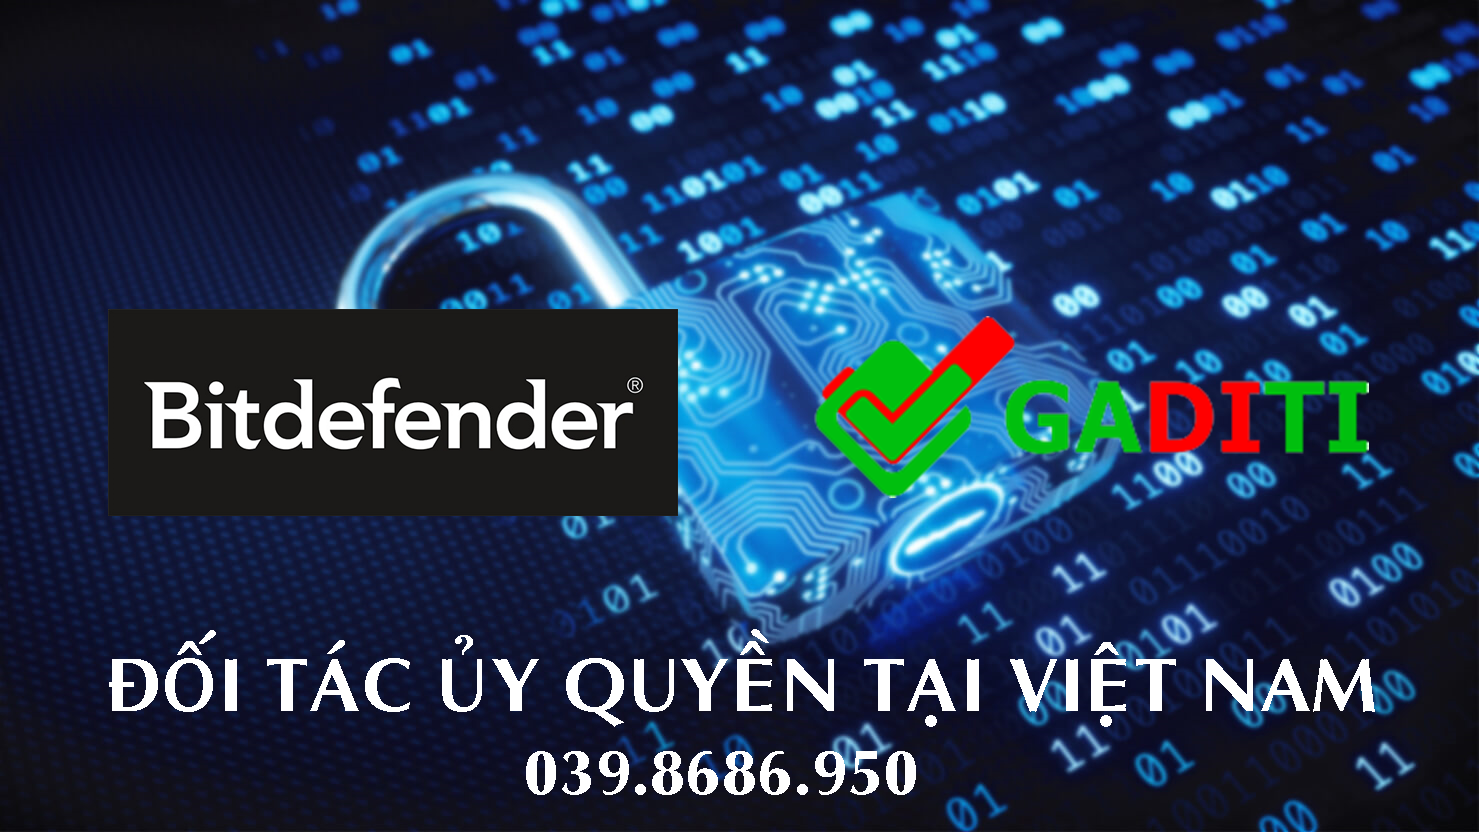 GADITI là đối tác ủy quyền Bitdefender tại Việt Nam